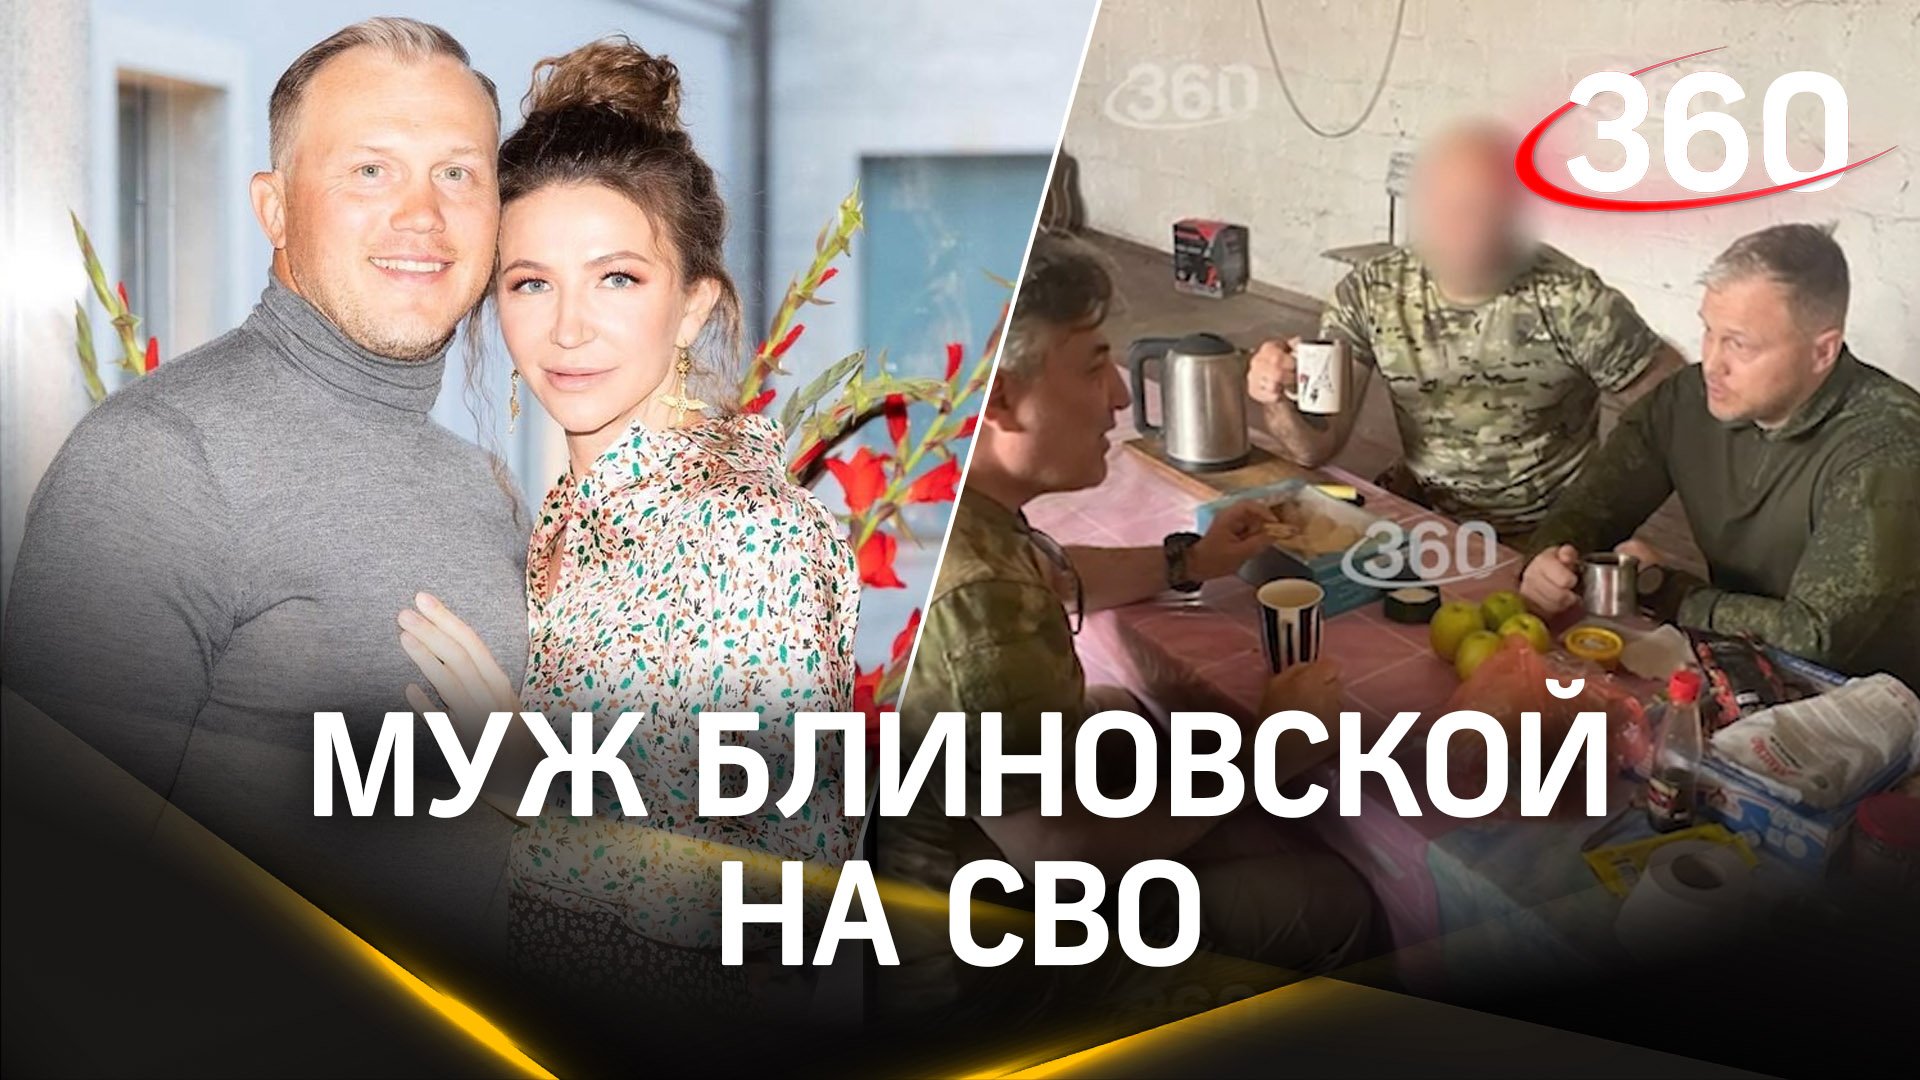 Алексей Блиновский на СВО: первые кадры мужа королевы марафонов, подписавшего контракт с Минобороны